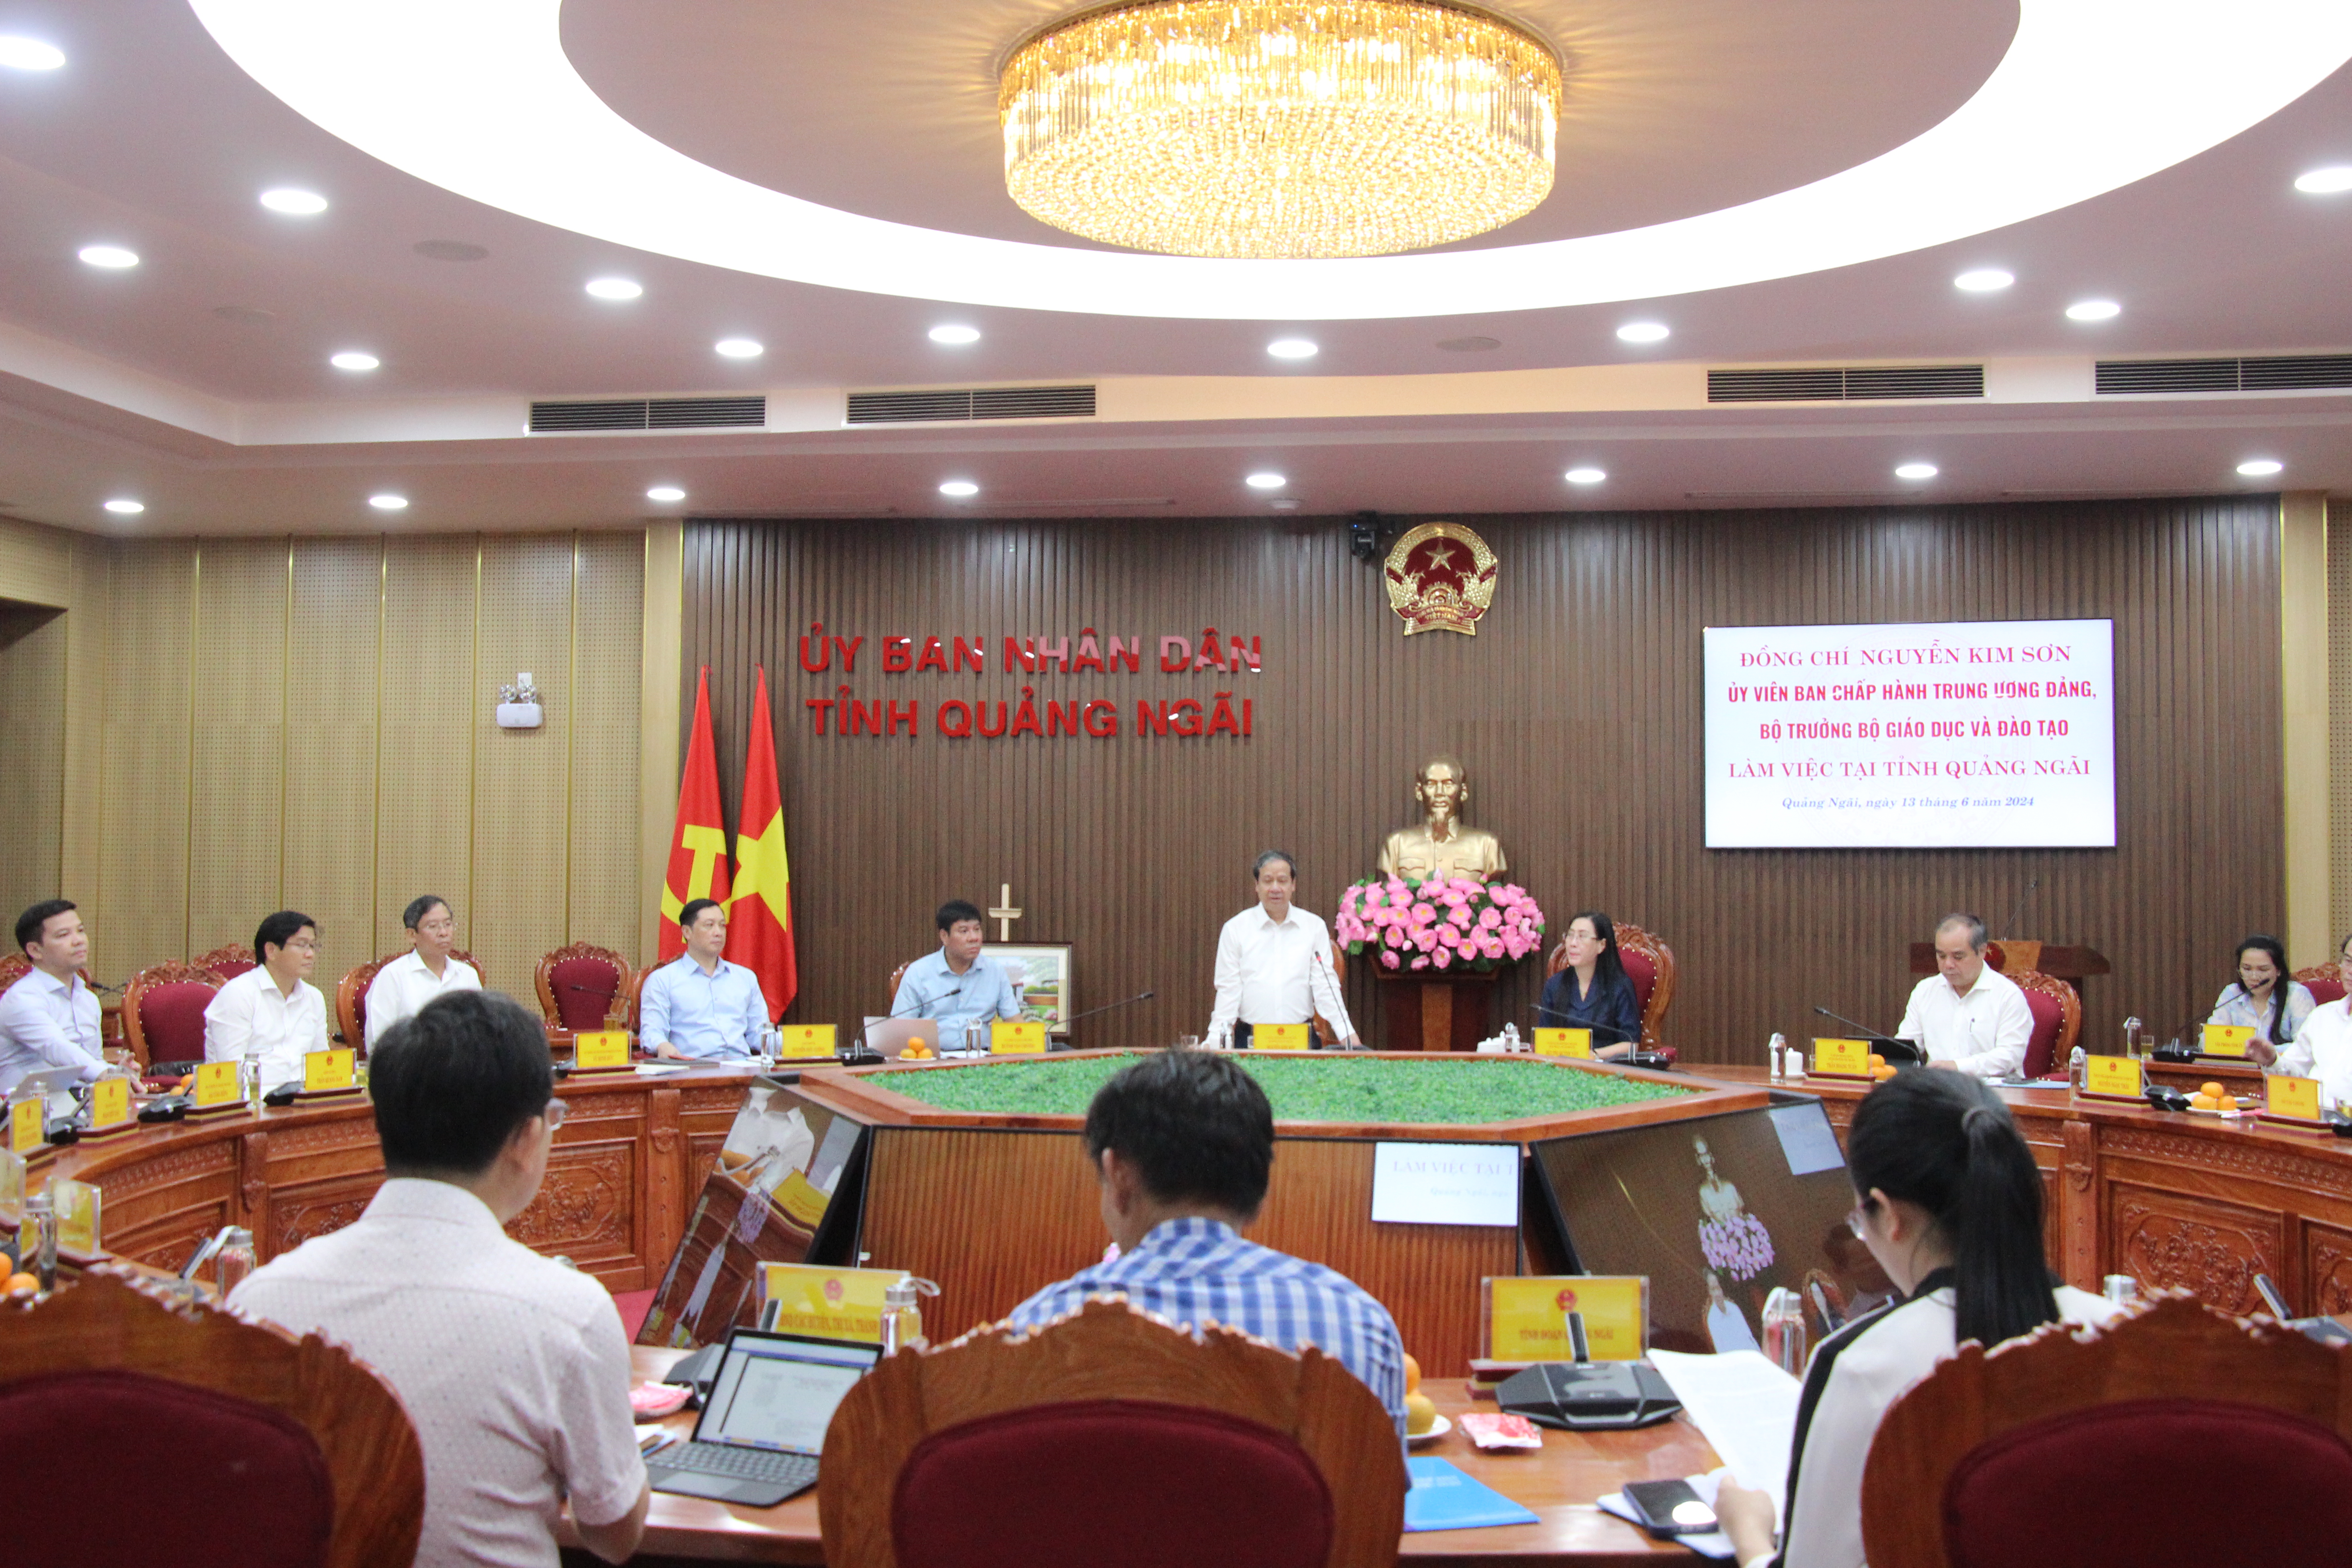 Đoàn công tác do Bộ trưởng Nguyễn Kim Sơn dẫn đầu làm việc tại tỉnh Quảng Ngãi.